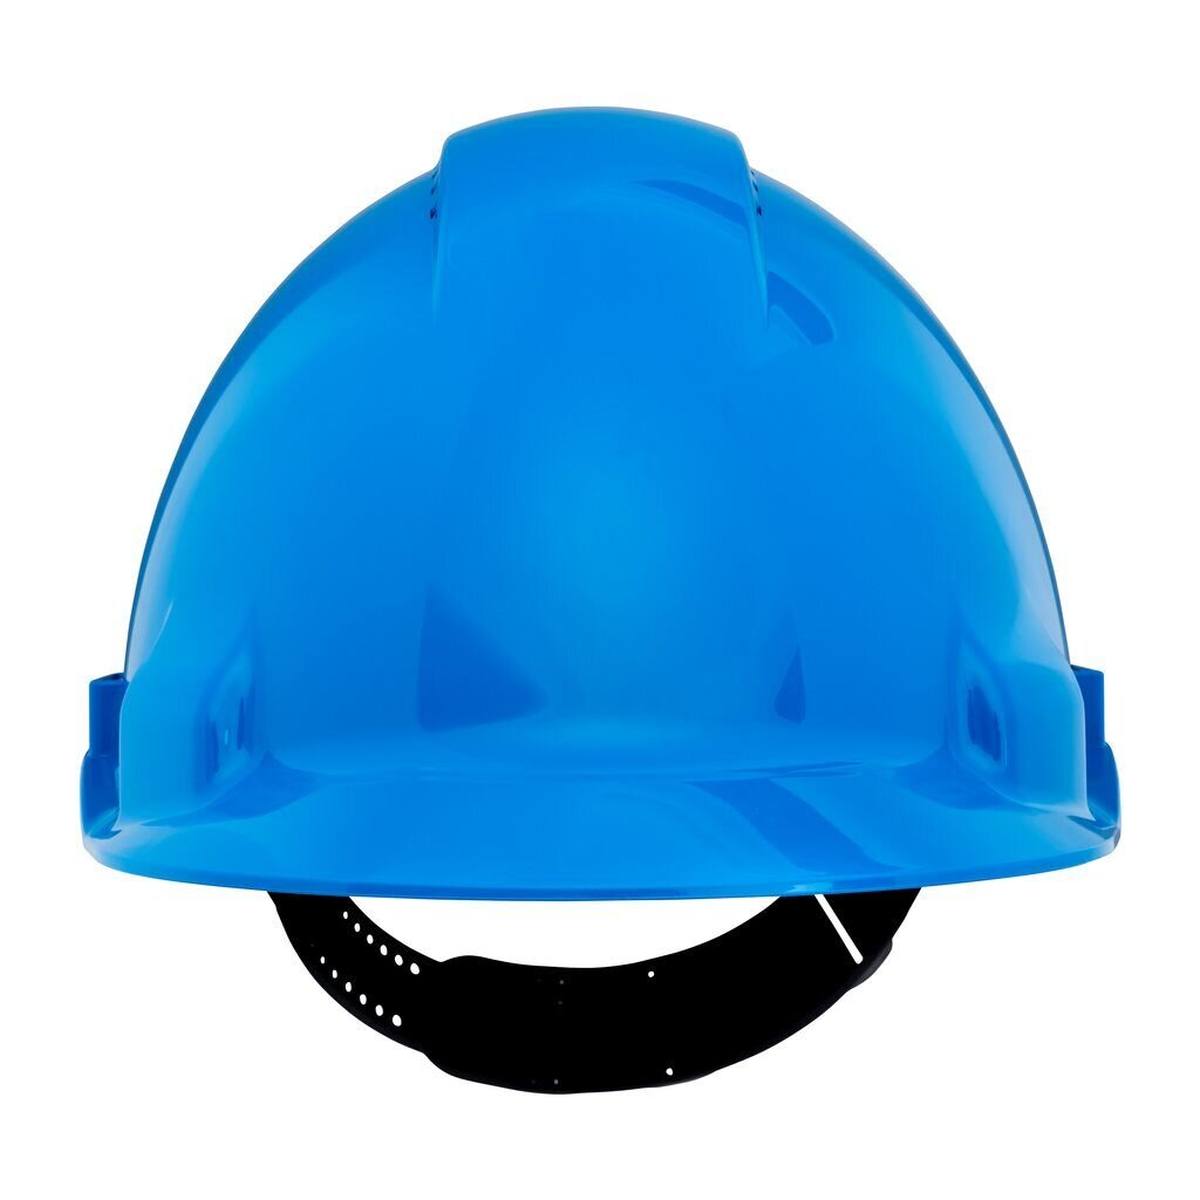 3M Casco de seguridad G3000 G30CUB en azul, ventilado, con uvicator, pinlock y banda de sudor de plástico